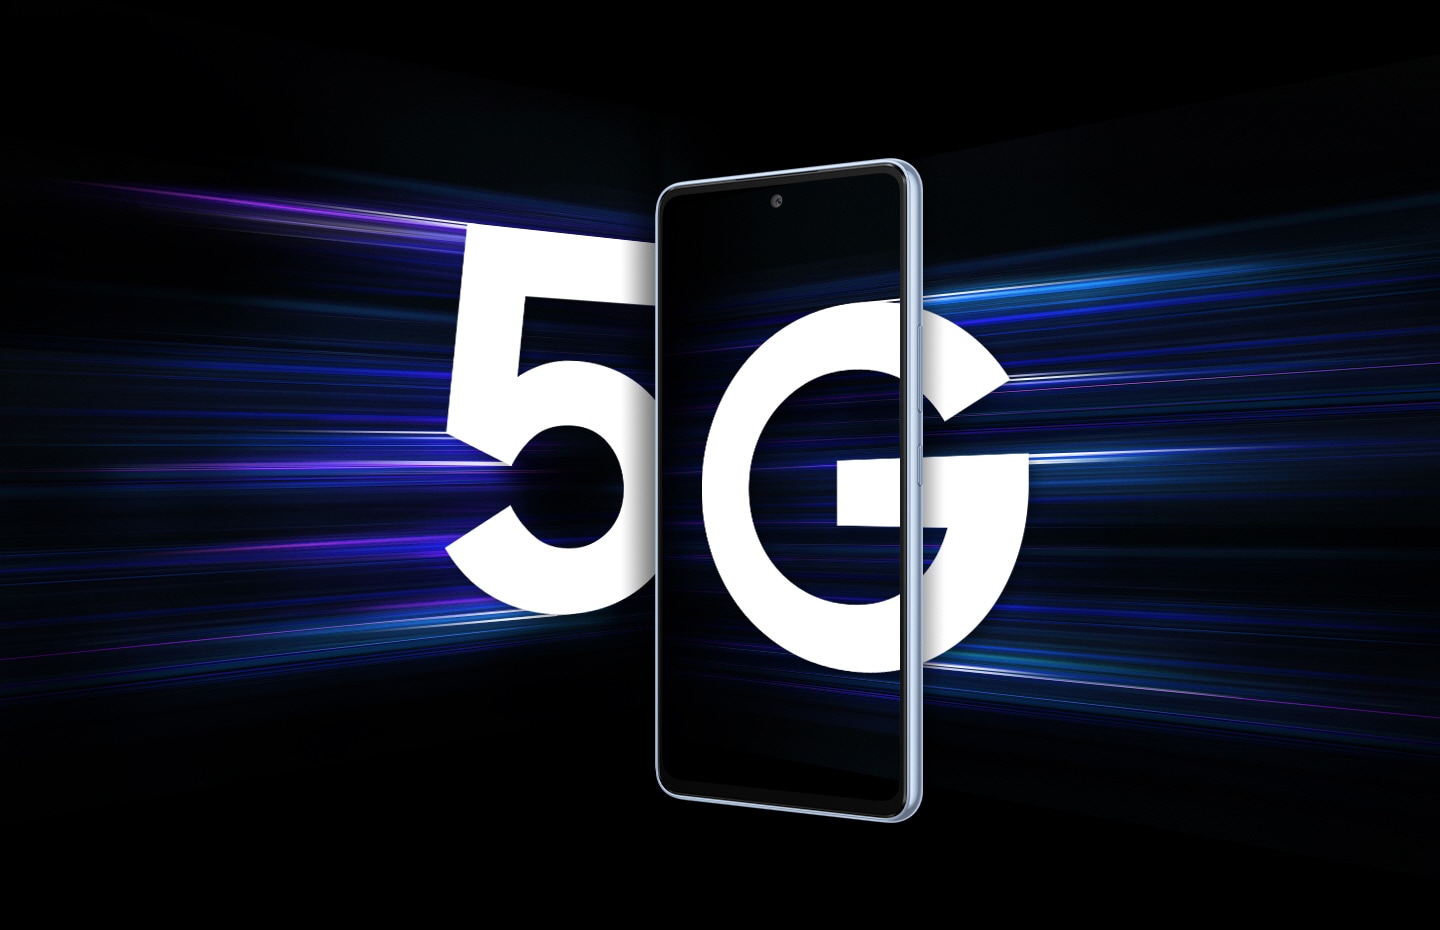 Galaxy A53 5G vu de face sur fond noir. De gauche à droite, un grand 5 blanc s'approche du smartphone avec des traînées lumineuses suivant le numéro pour montrer qu'il arrive rapidement. De droite, un grand G blanc est entré partiellement à l'intérieur de l'écran du smartphone.